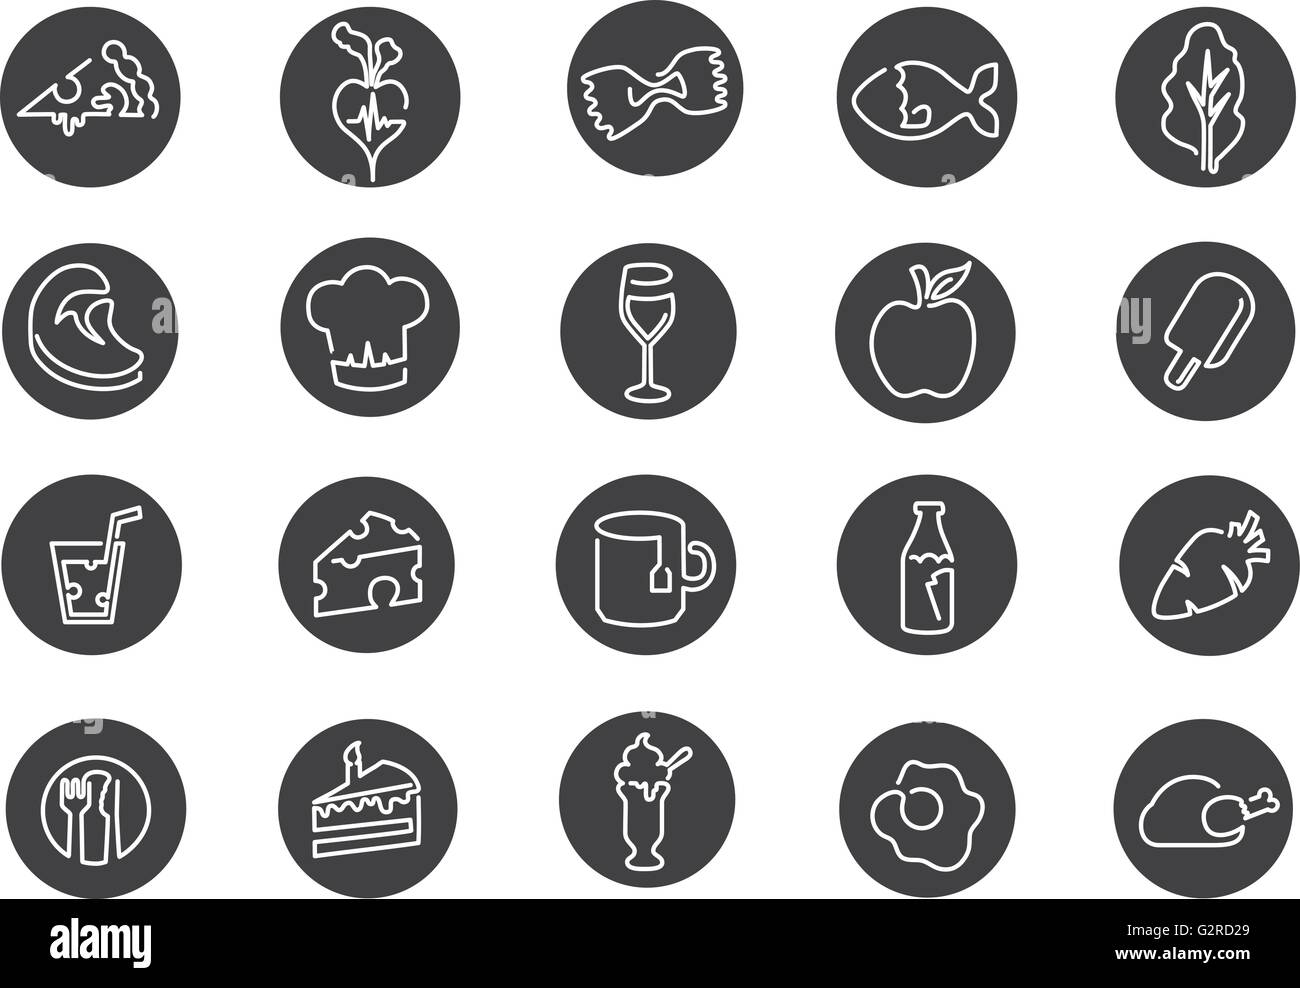 Ilustración de iconos relacionados con la comida, la bebida y la dieta Ilustración del Vector